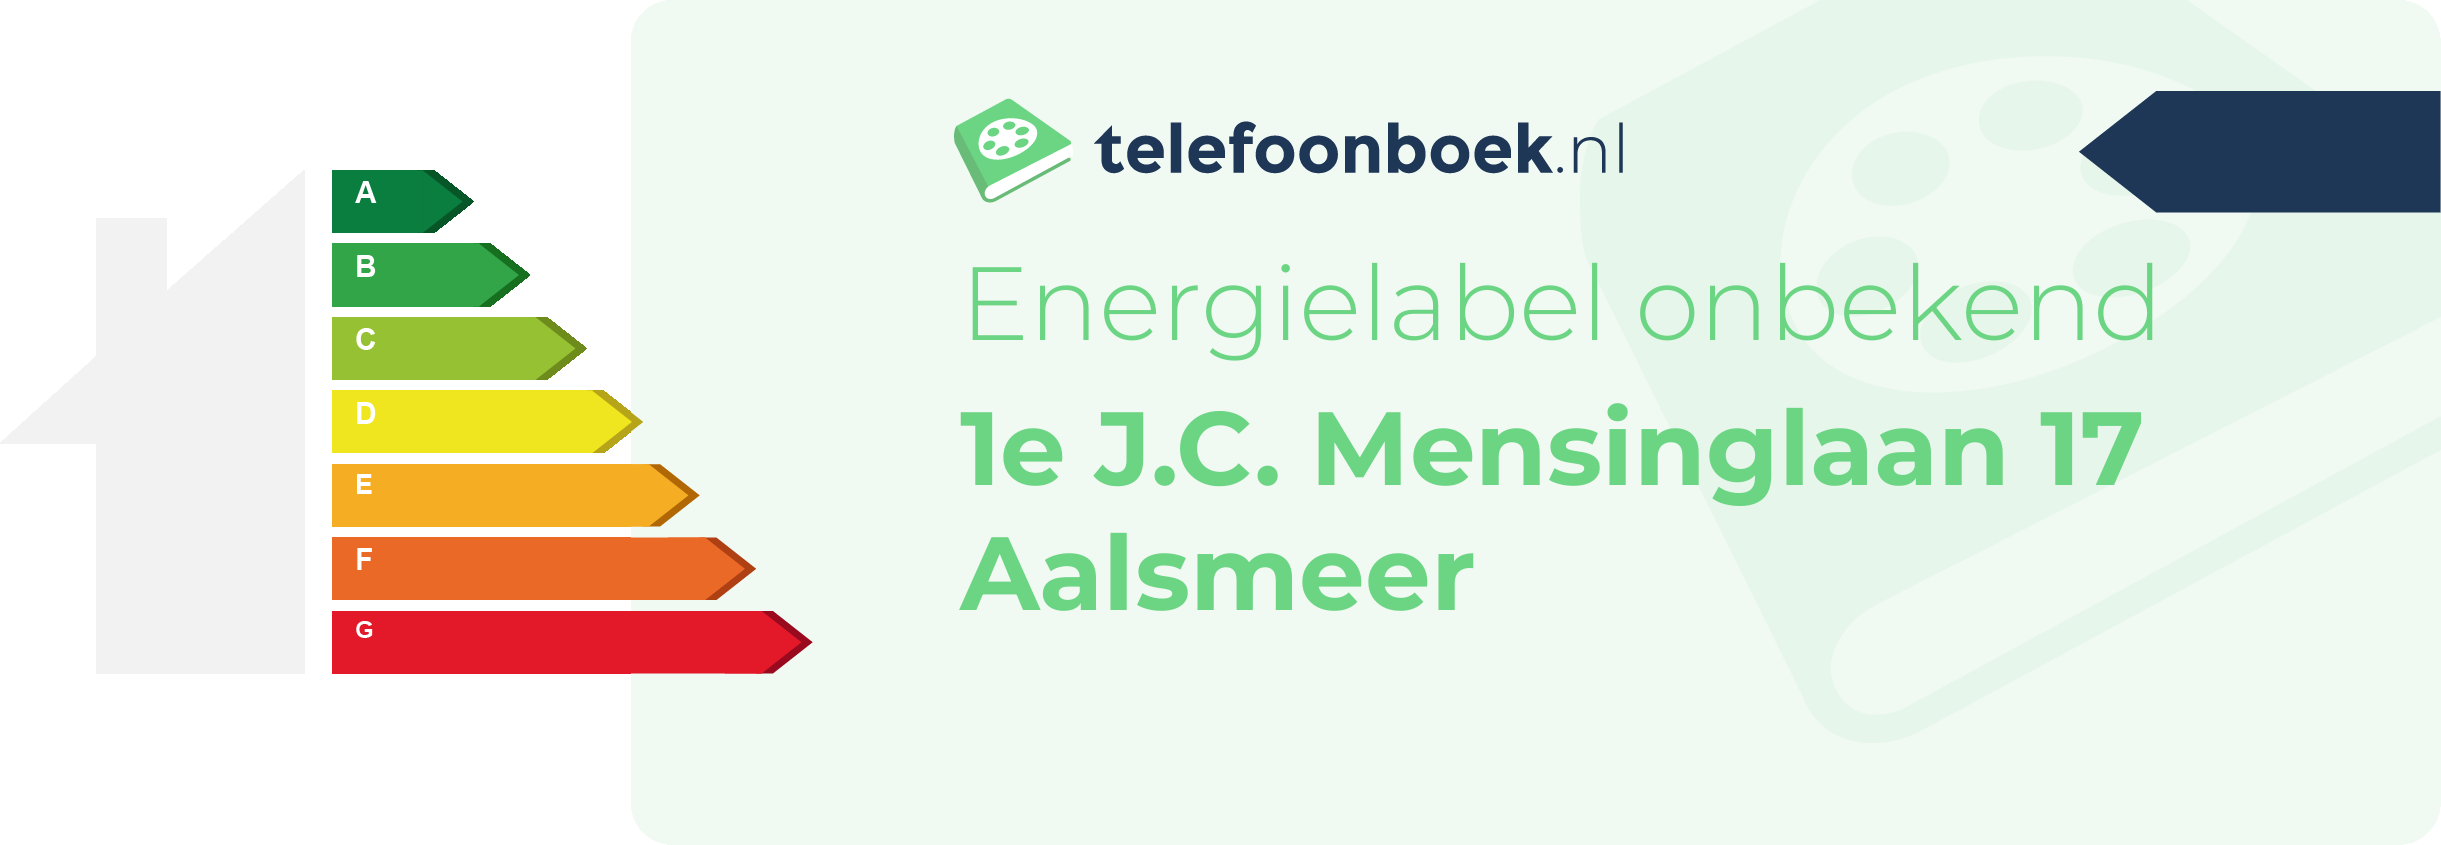 Energielabel 1e J.C. Mensinglaan 17 Aalsmeer